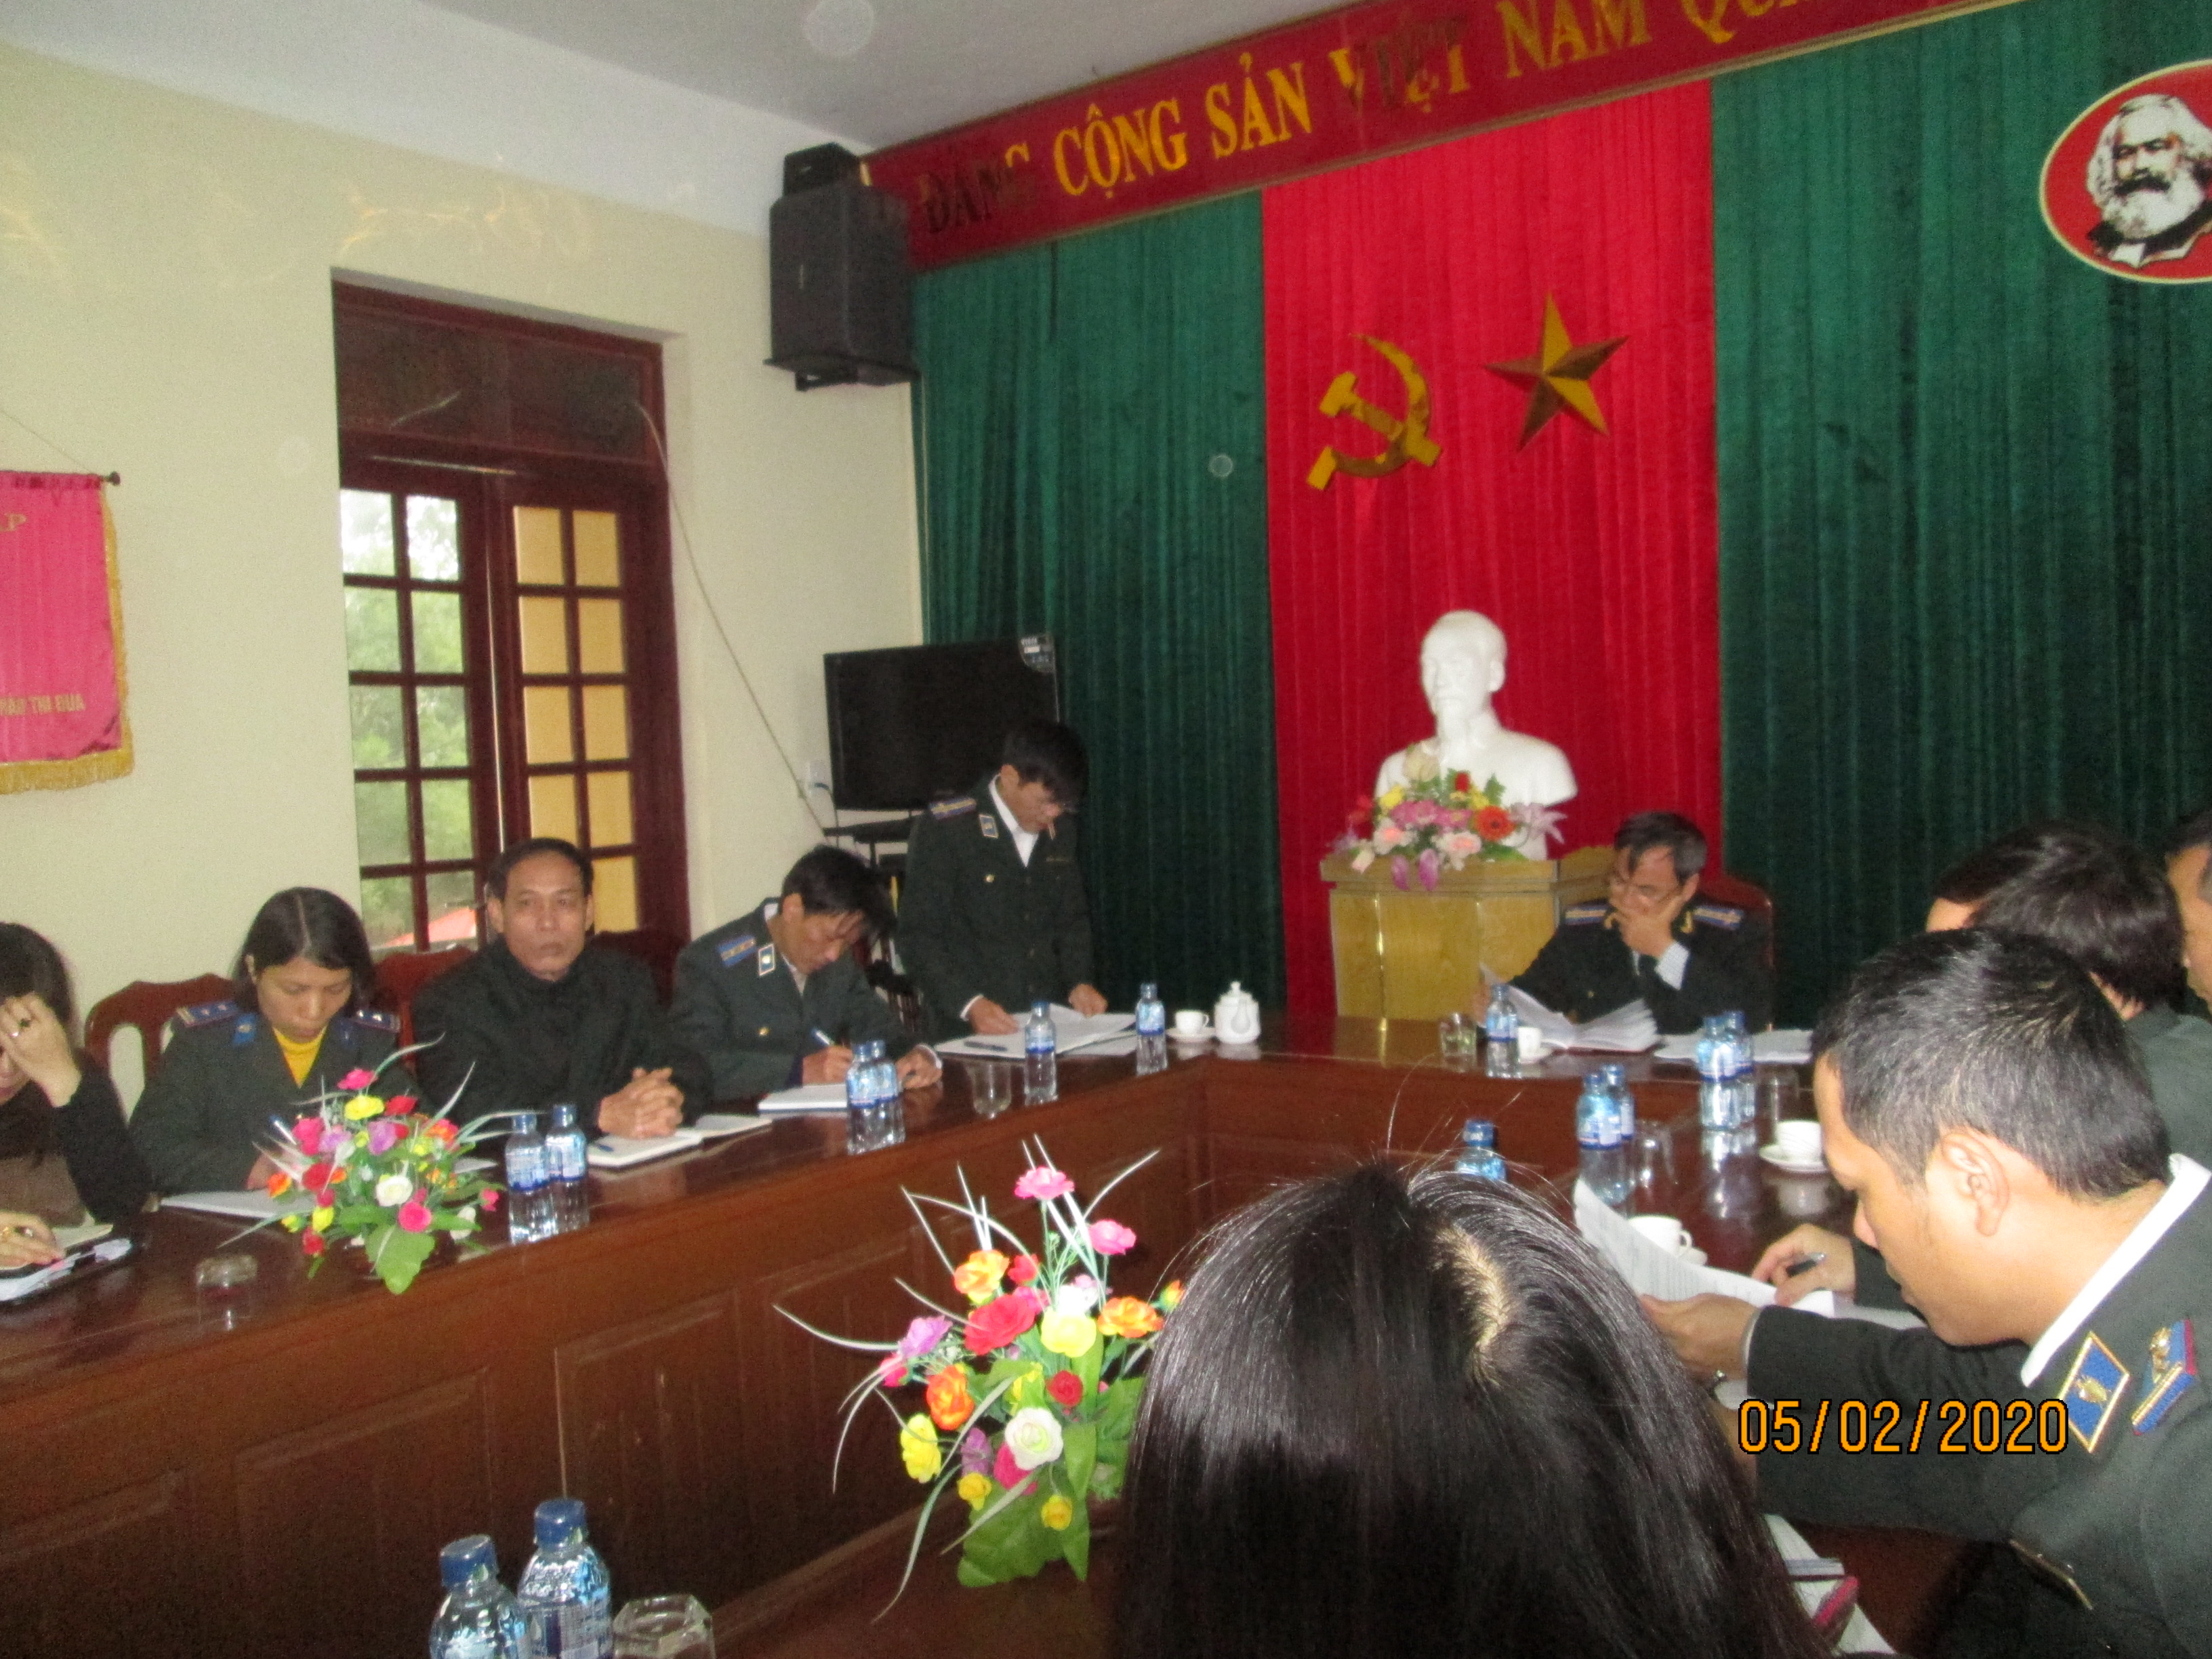 Chi bộ Cục Thi hành án dân sự tỉnh Ninh Bình tổ chức Hội nghị sinh hoạt Chi bộ mở rộng Triển khai Nghị quyết TW 7 khóa 12.